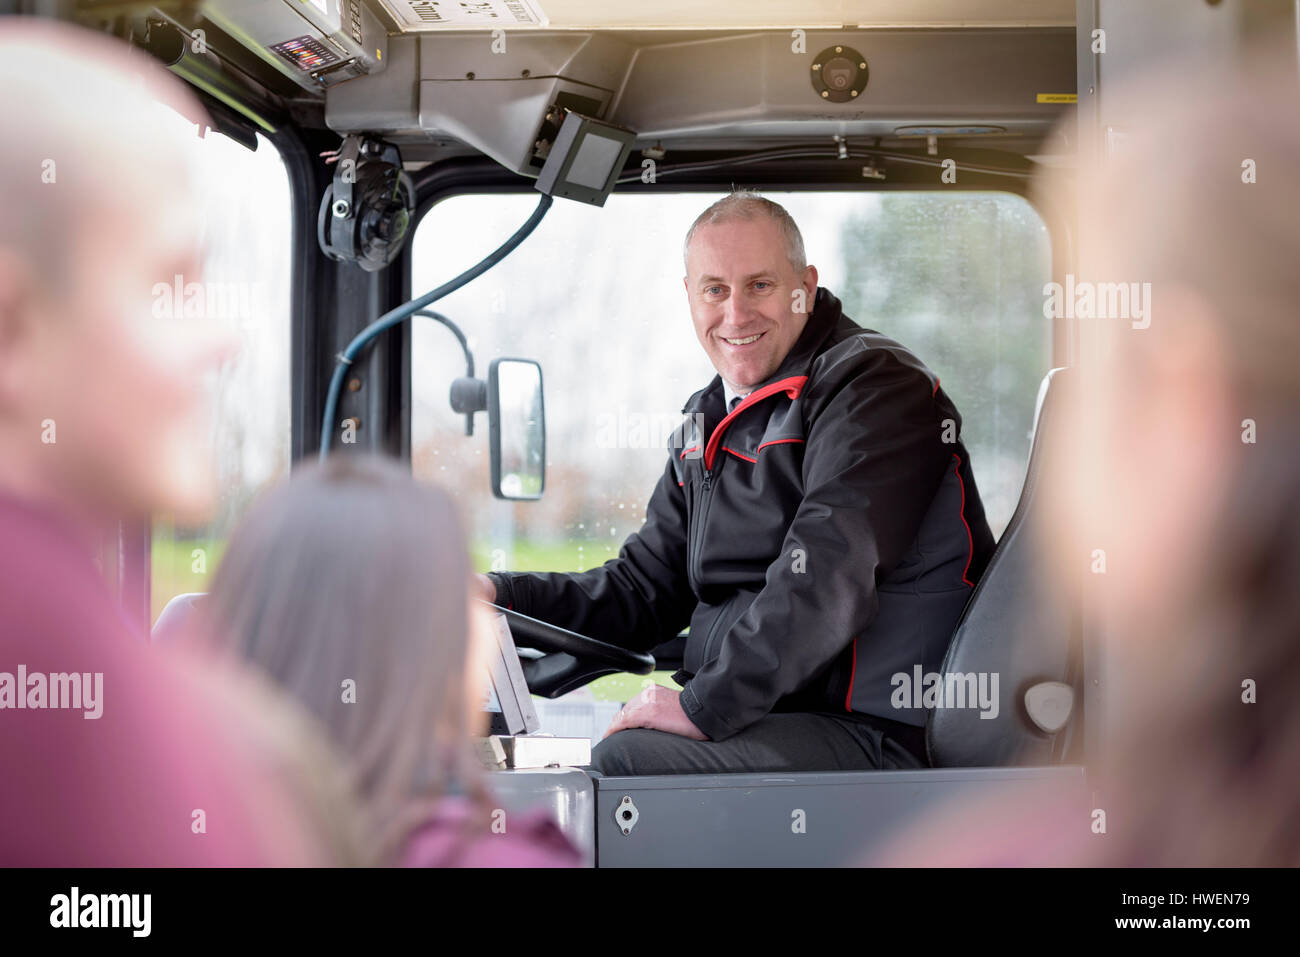 Retrato del conductor de autobús con el embarque a los pasajeros de autobús eléctrico Foto de stock